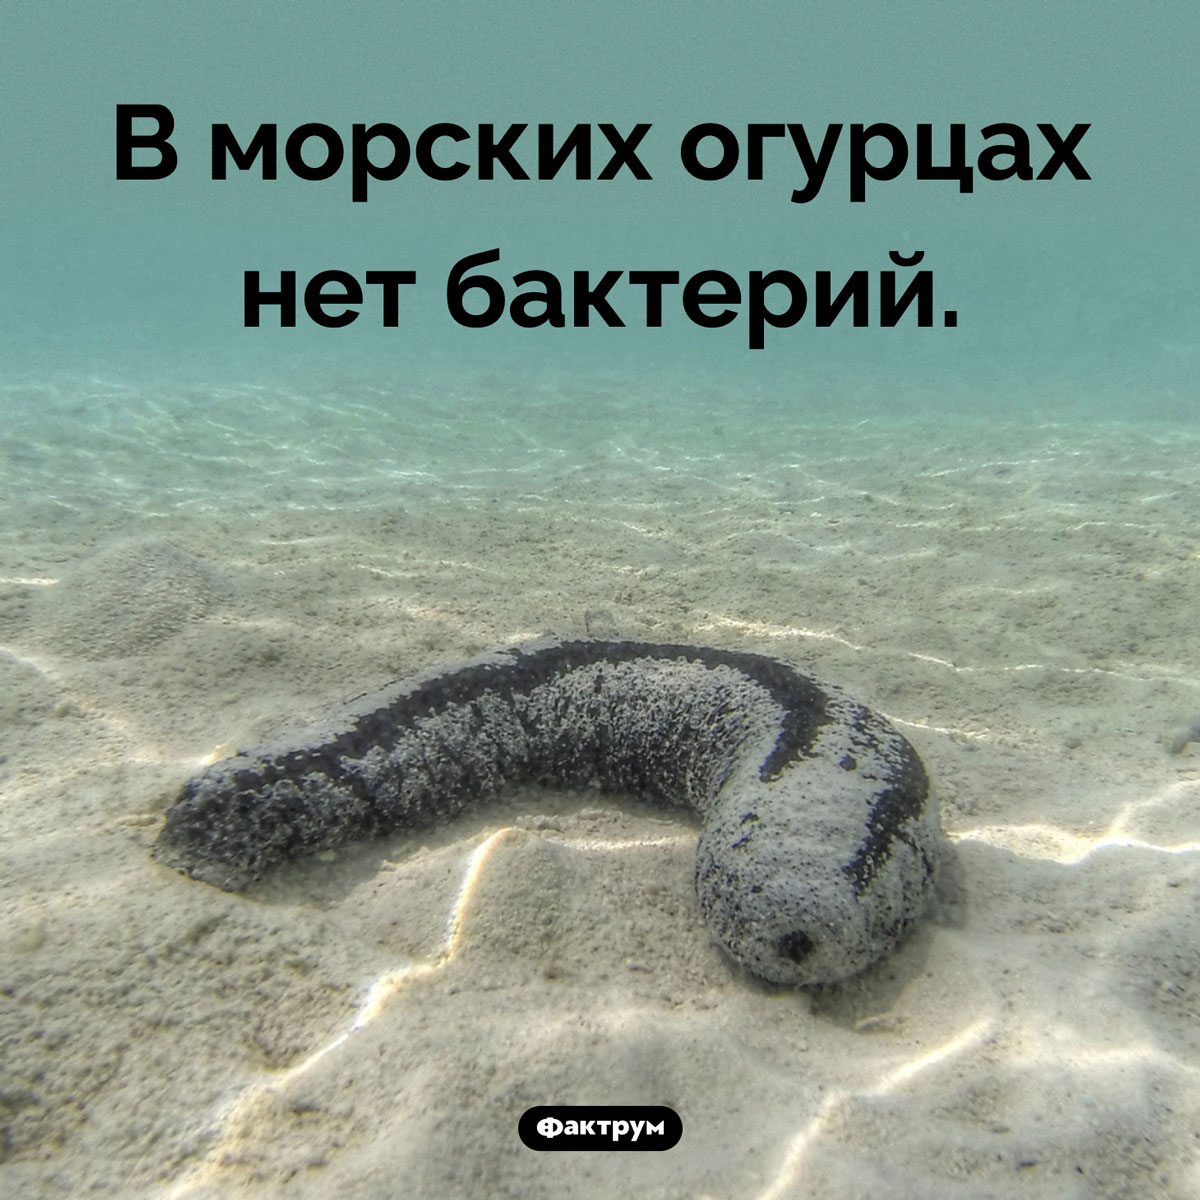 Особенность морских огурцов. В морских огурцах нет бактерий.